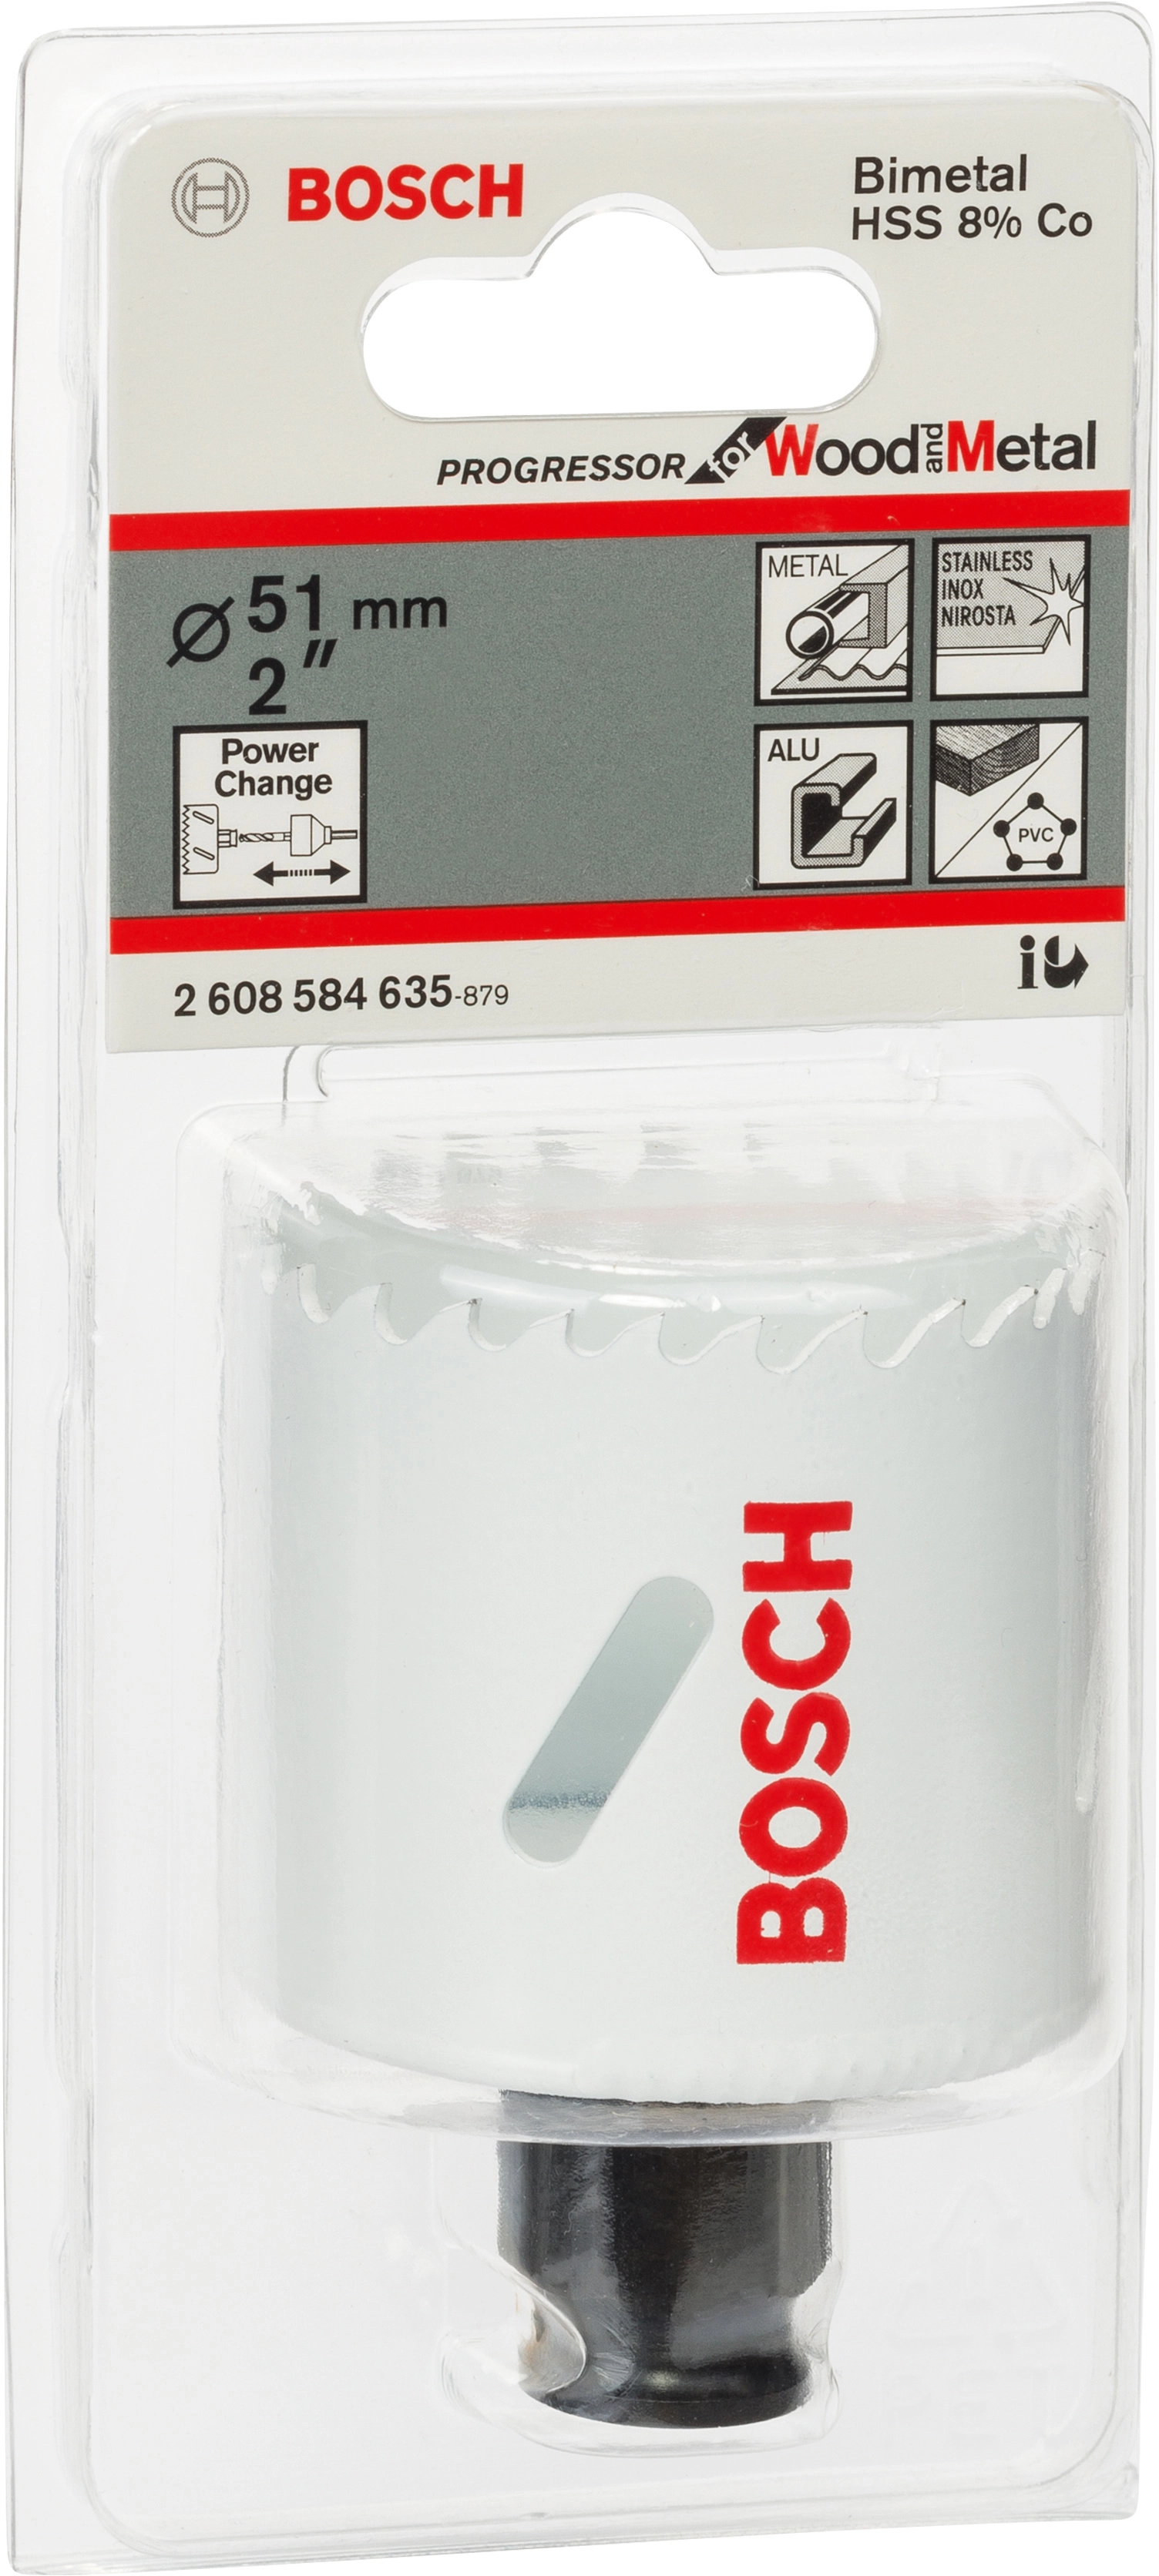 Bosch Lochsäge Pro Progressor for mm bei Wood OBI Metal and Ø 51 kaufen